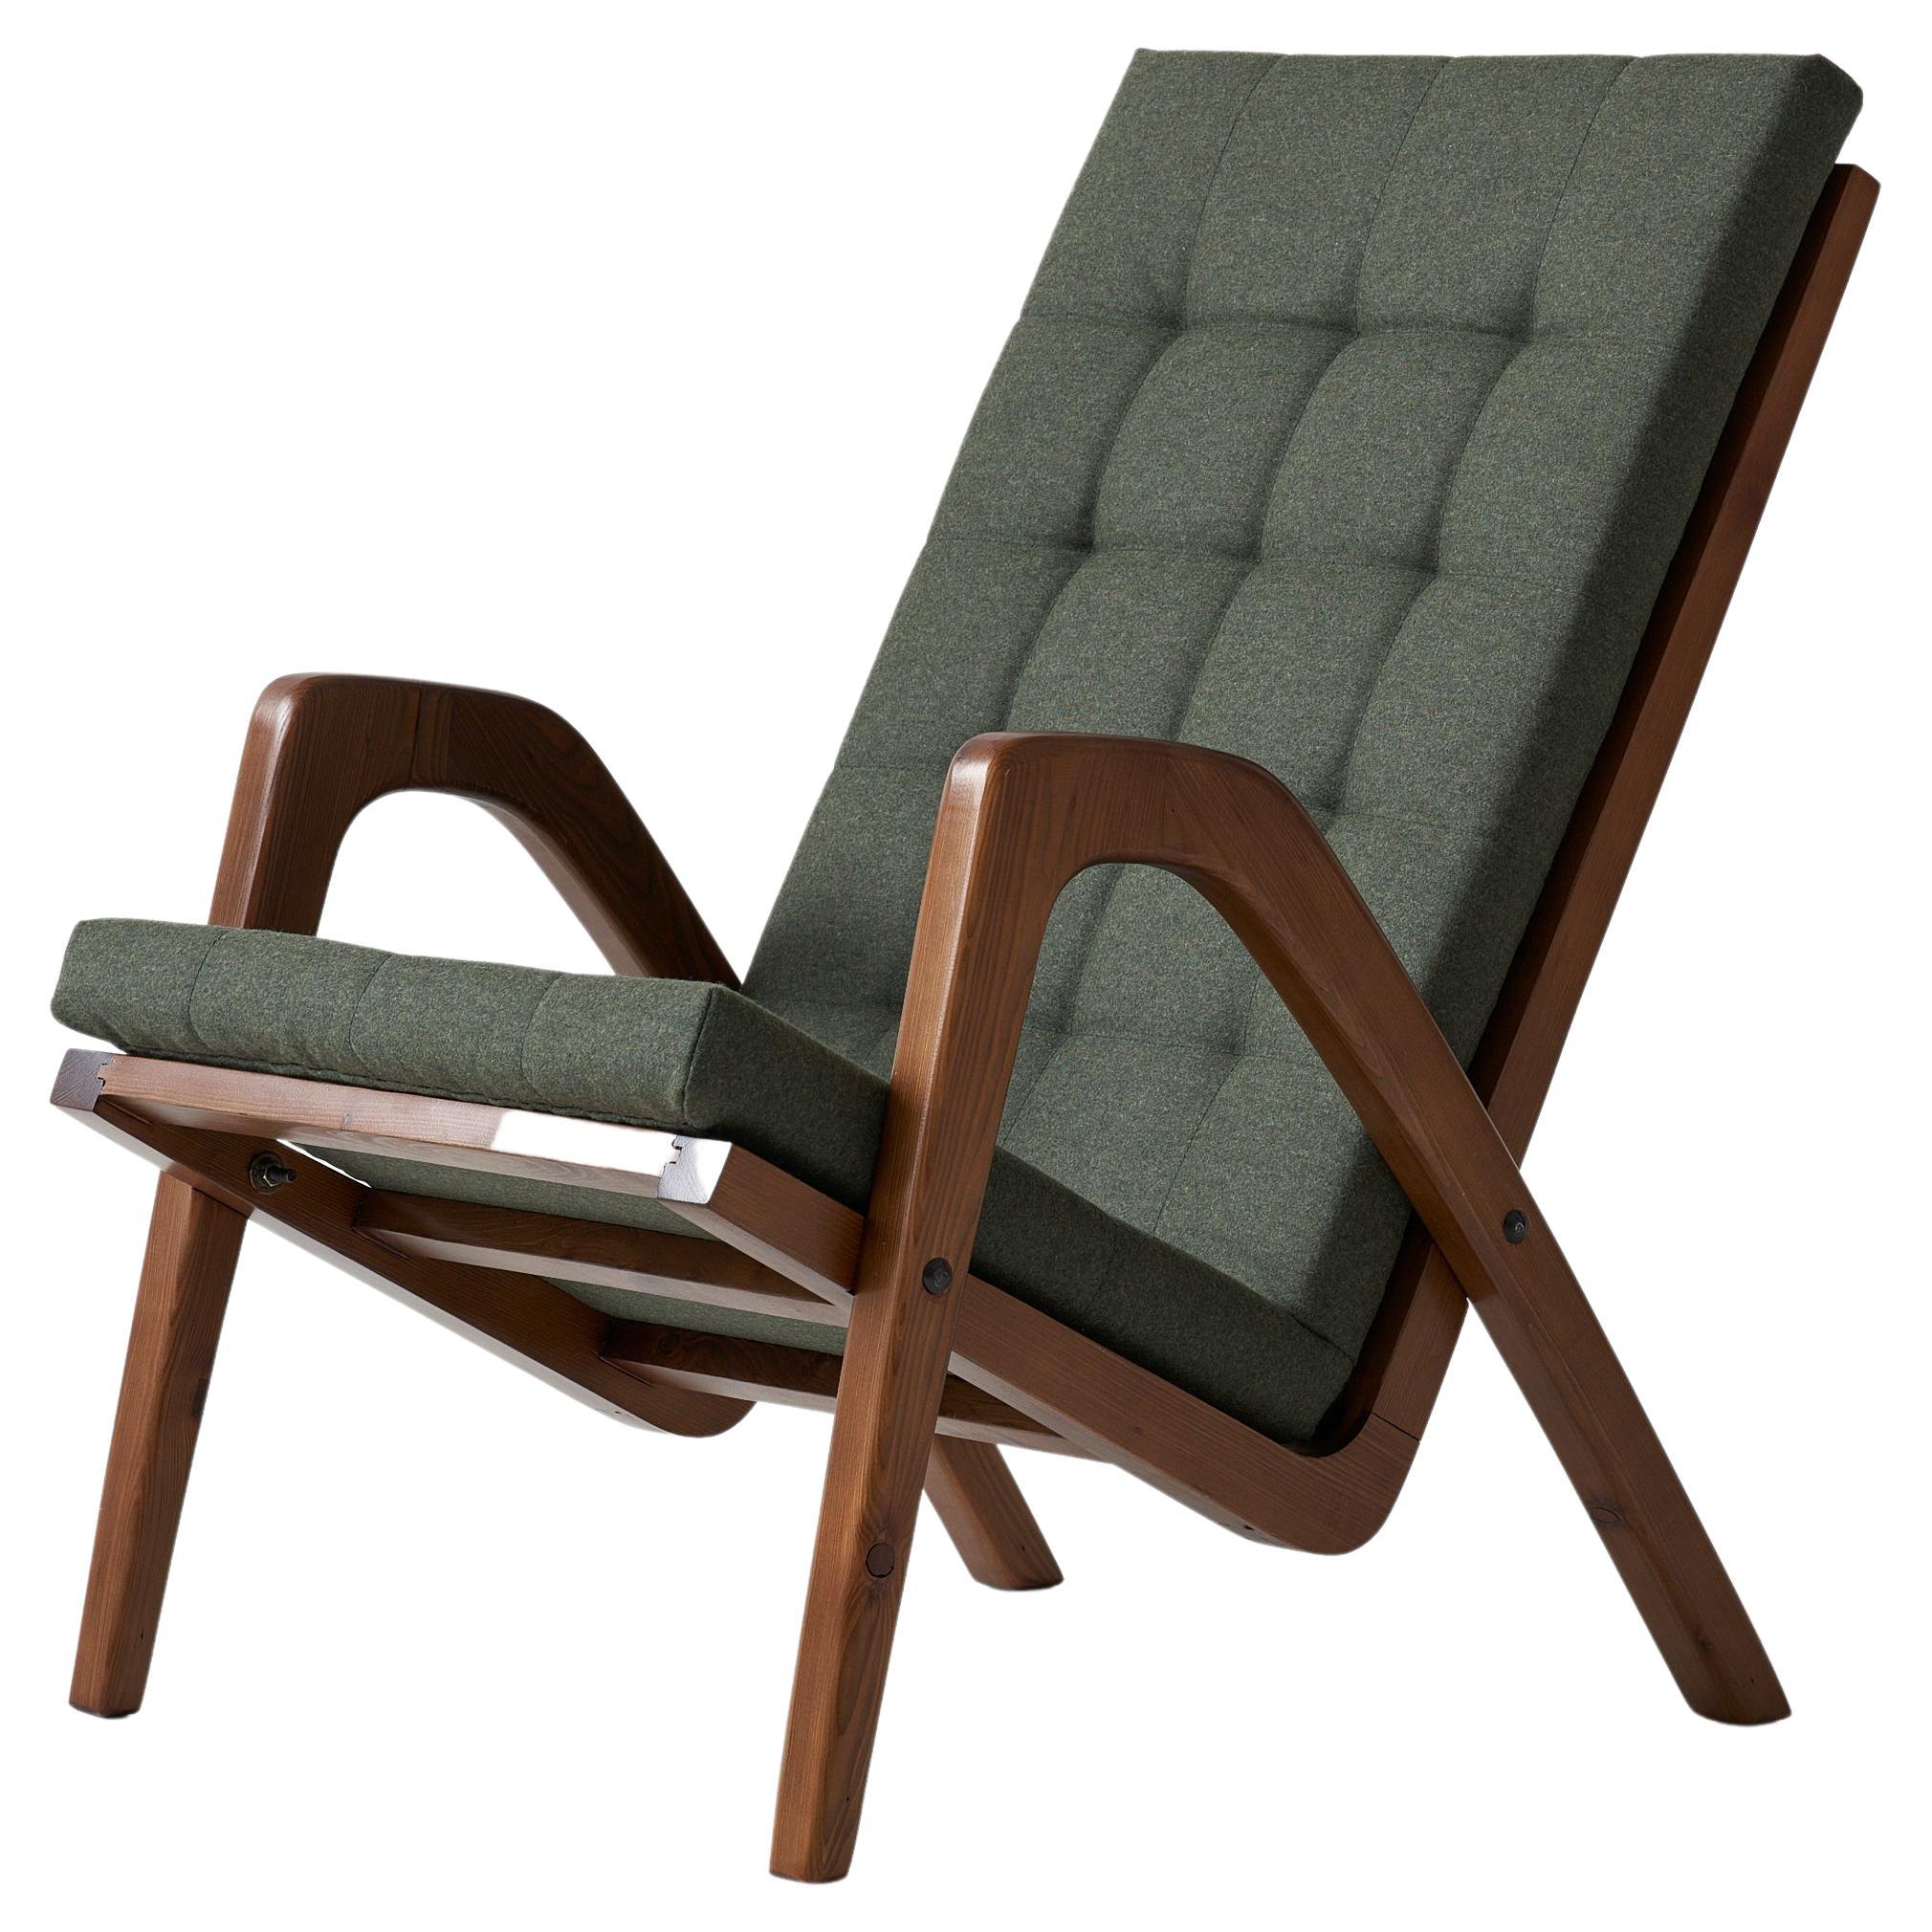 1960s armchair by Jan Vanek for Uluv